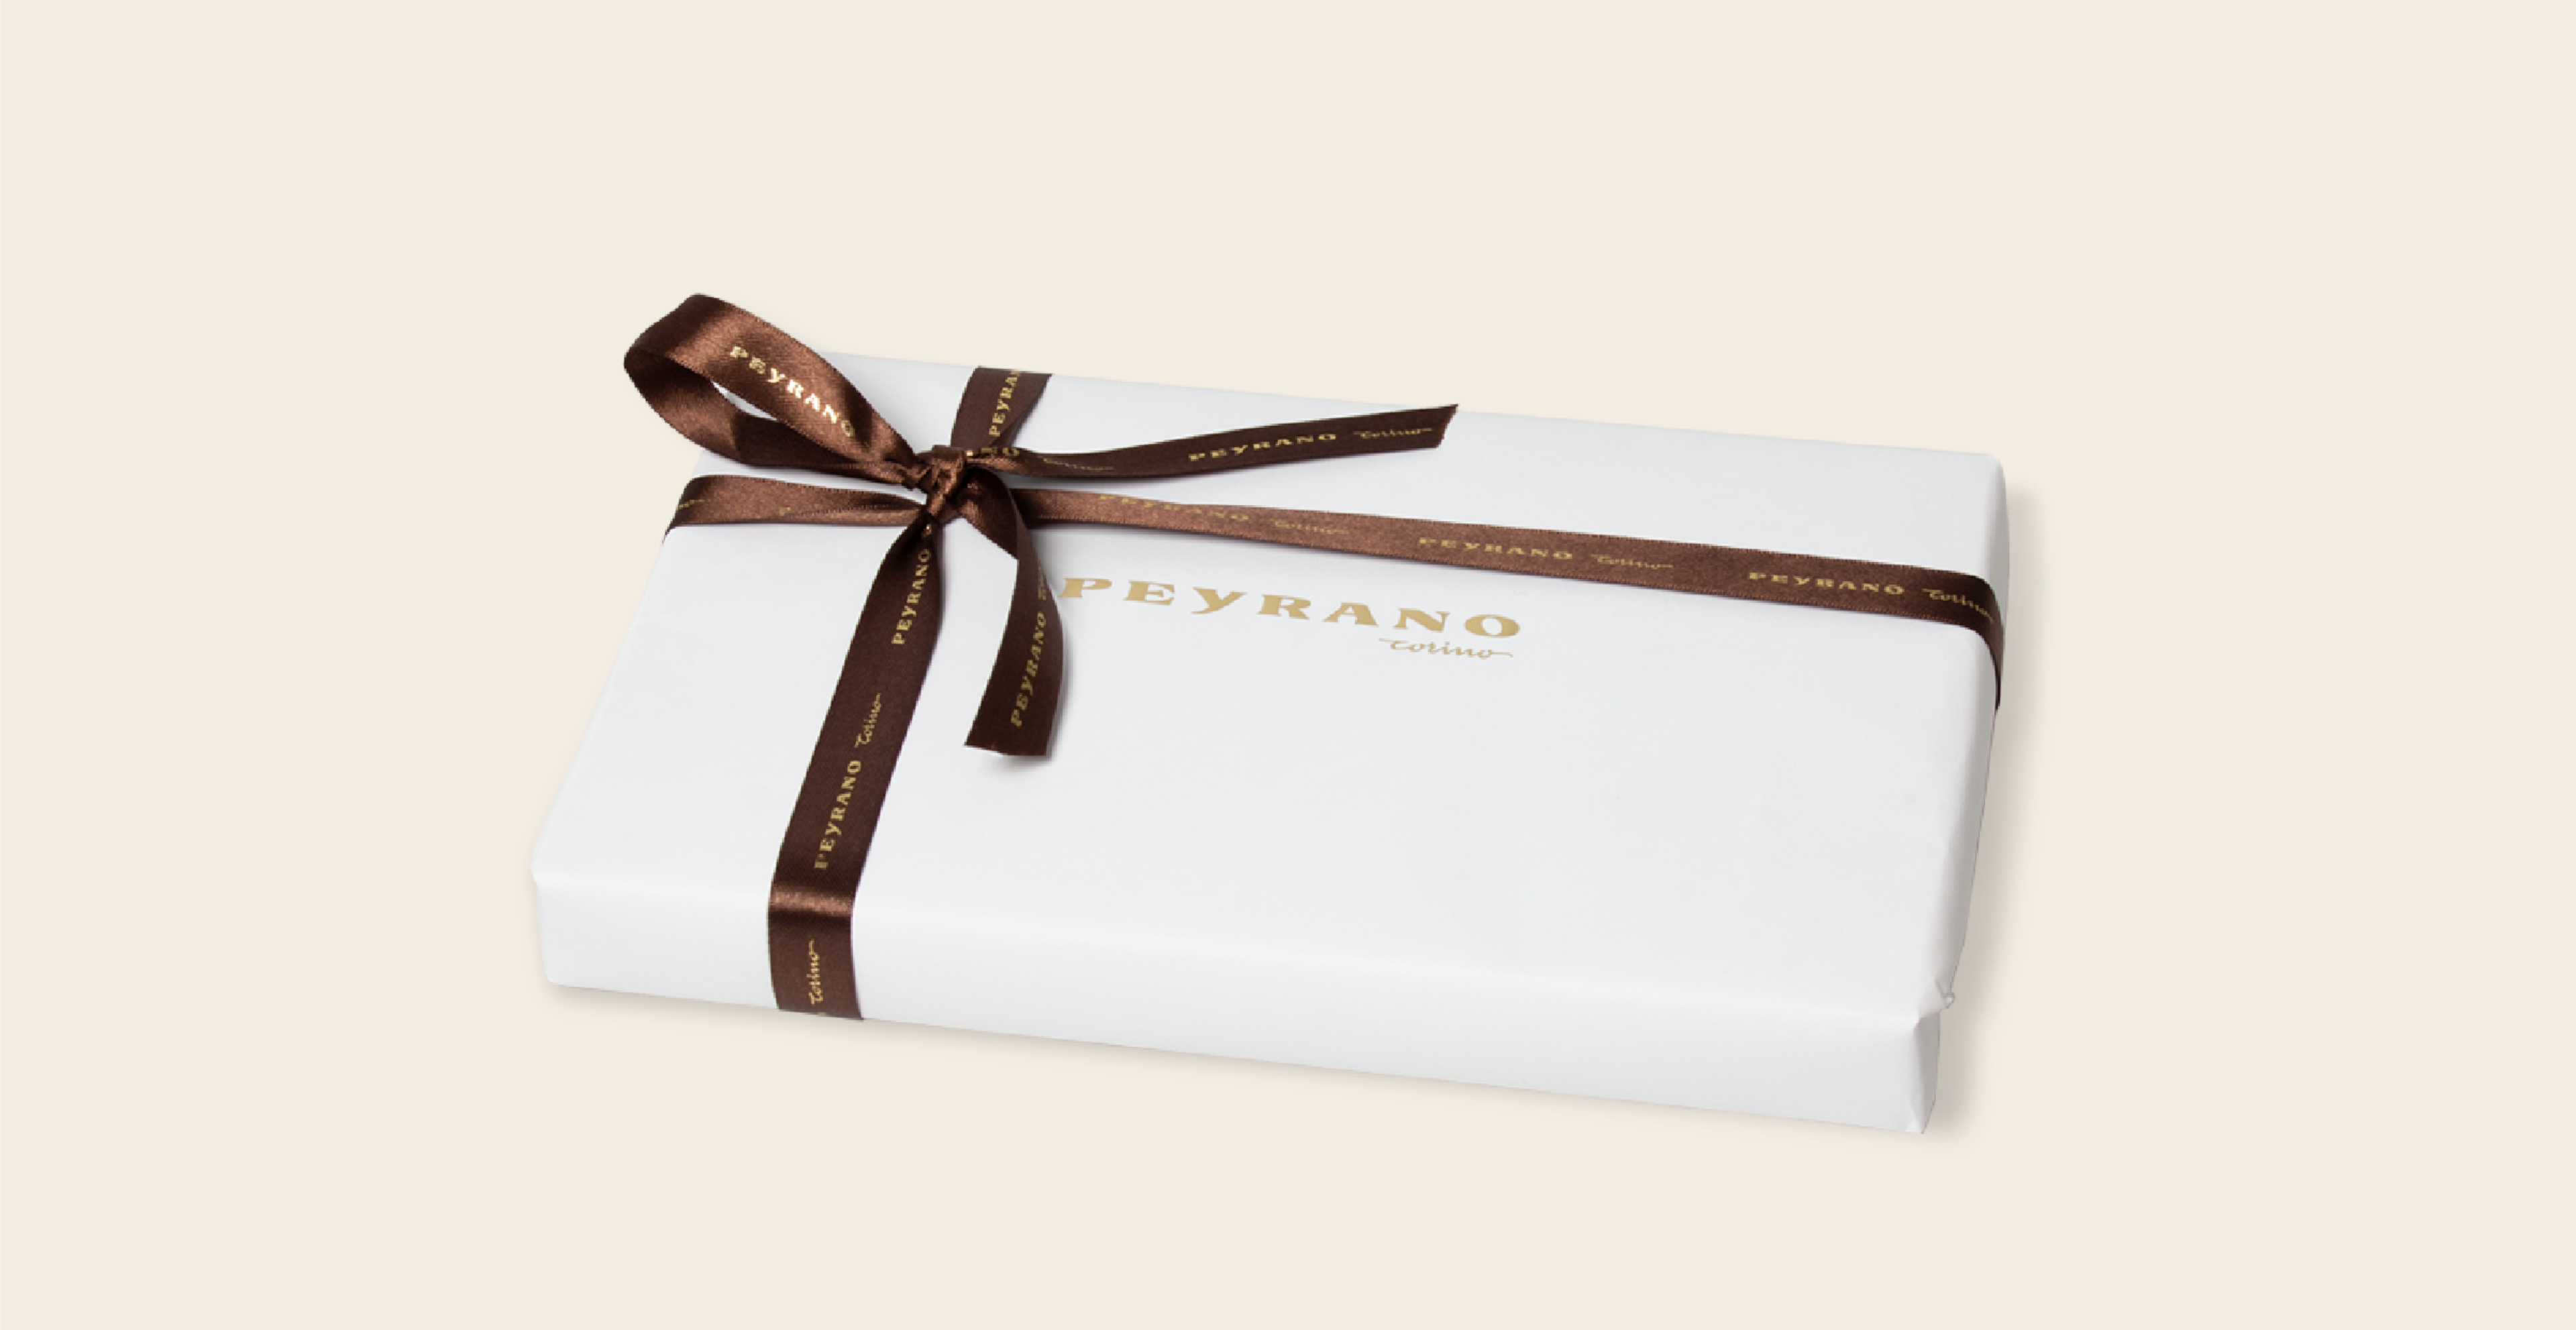 Peyrano Piedmontese Giandujotto Chocolate Box